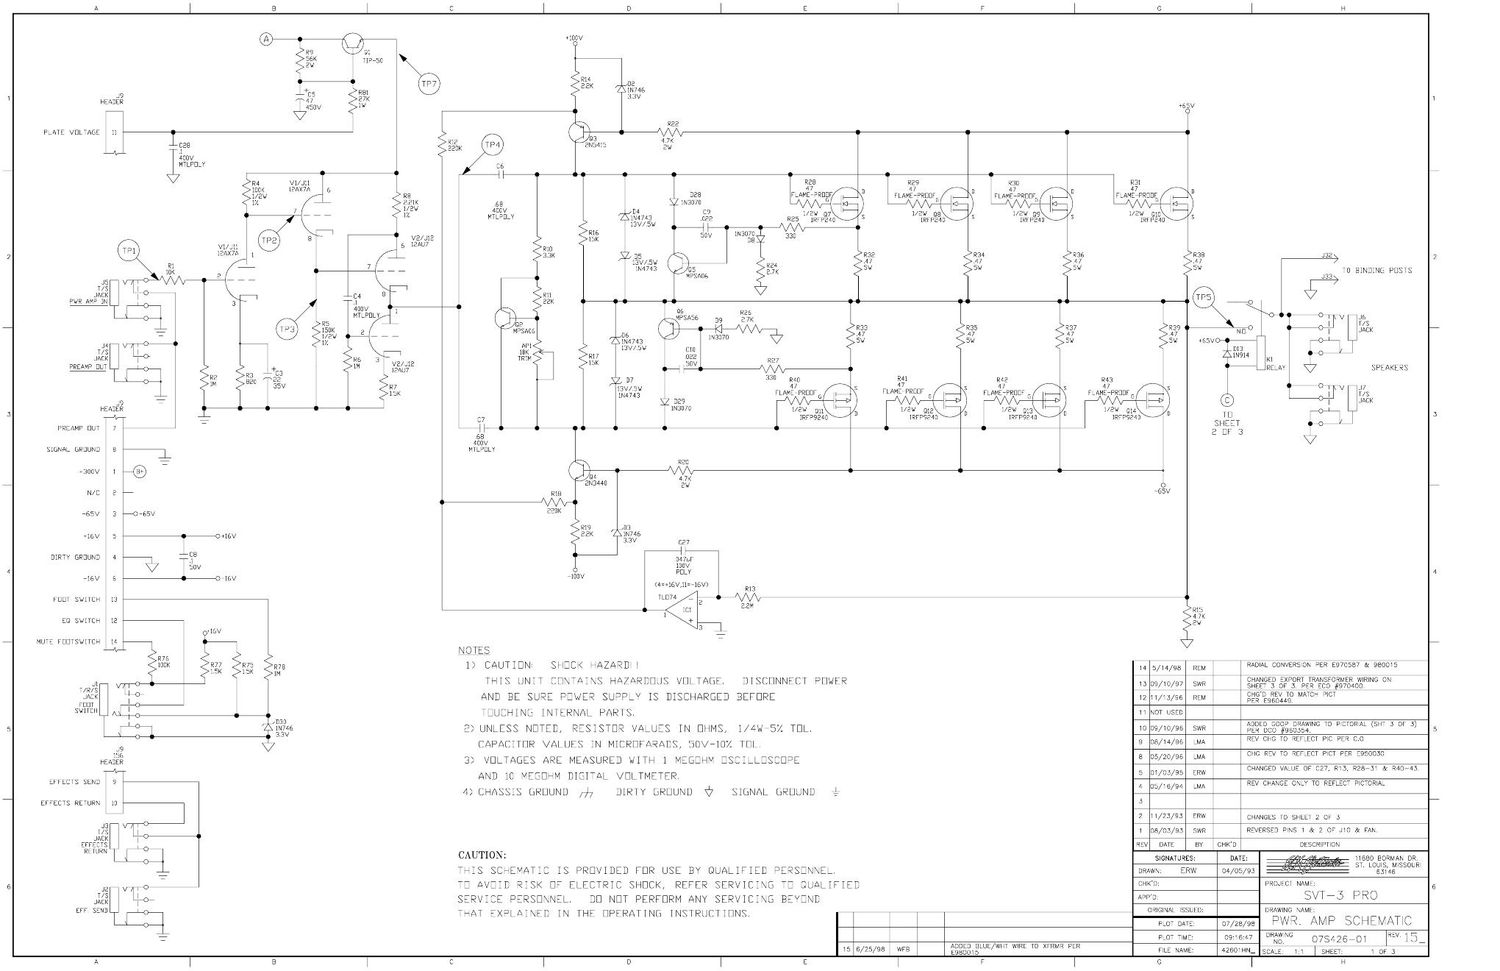 ampeg svt 3 pro power amp 07s426 schematics